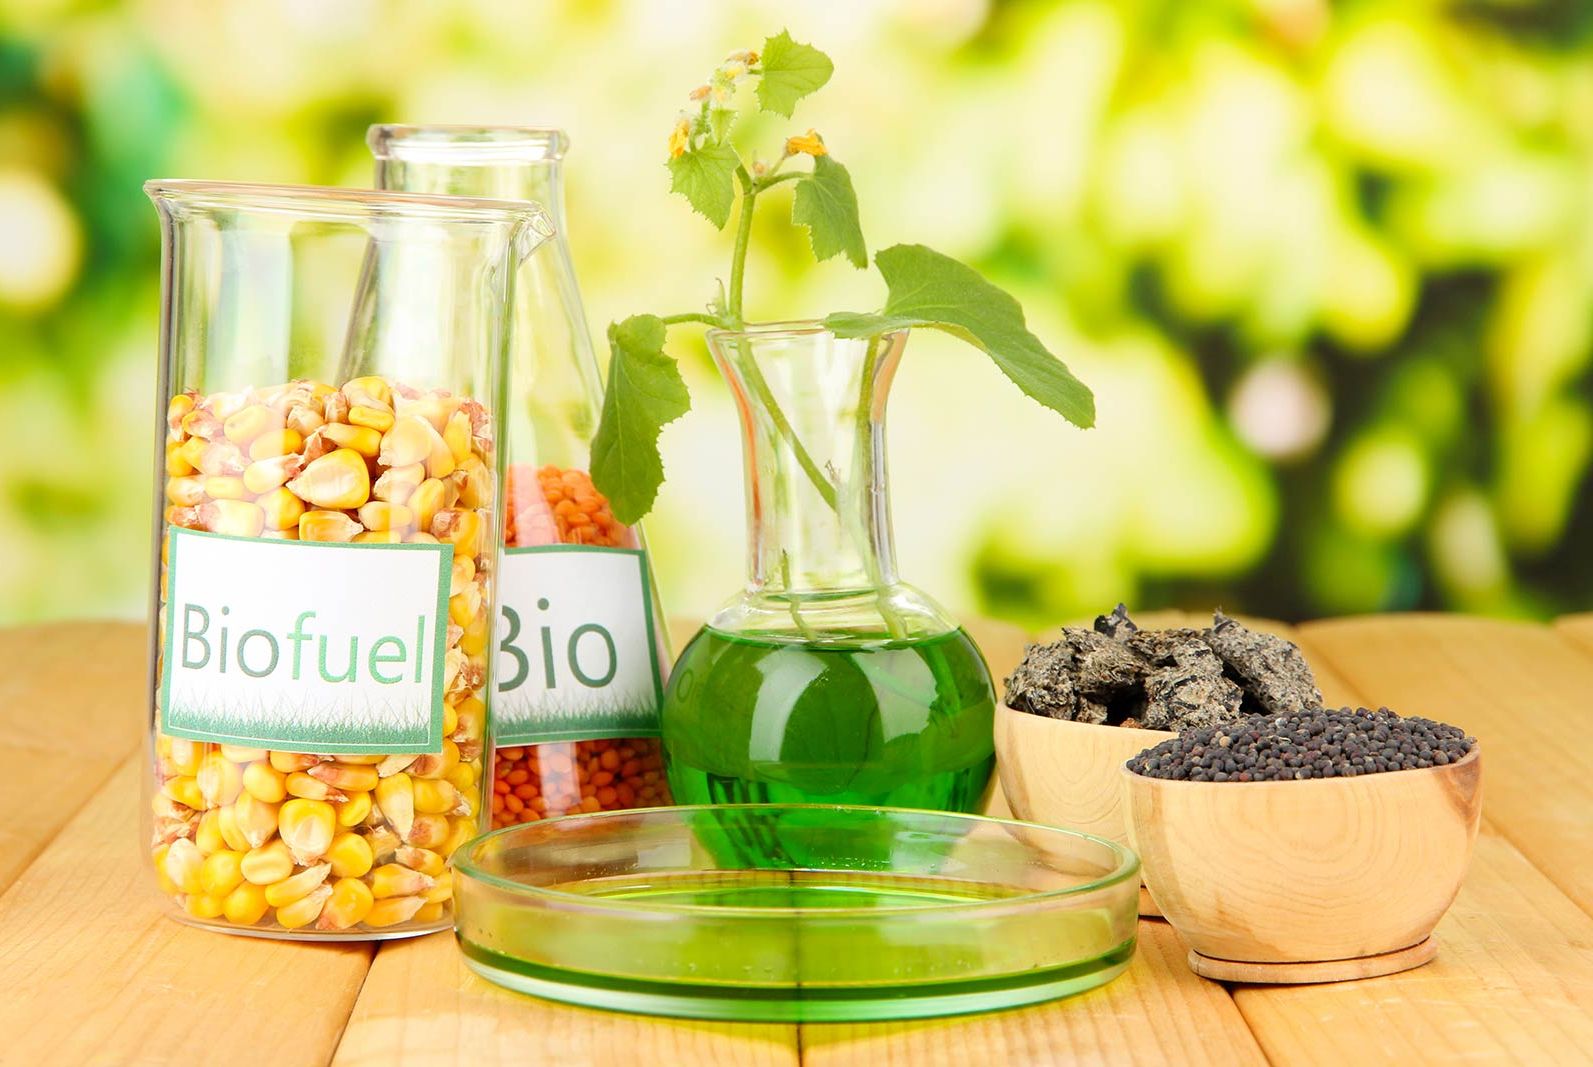  biodiesel-brasil-vantagens